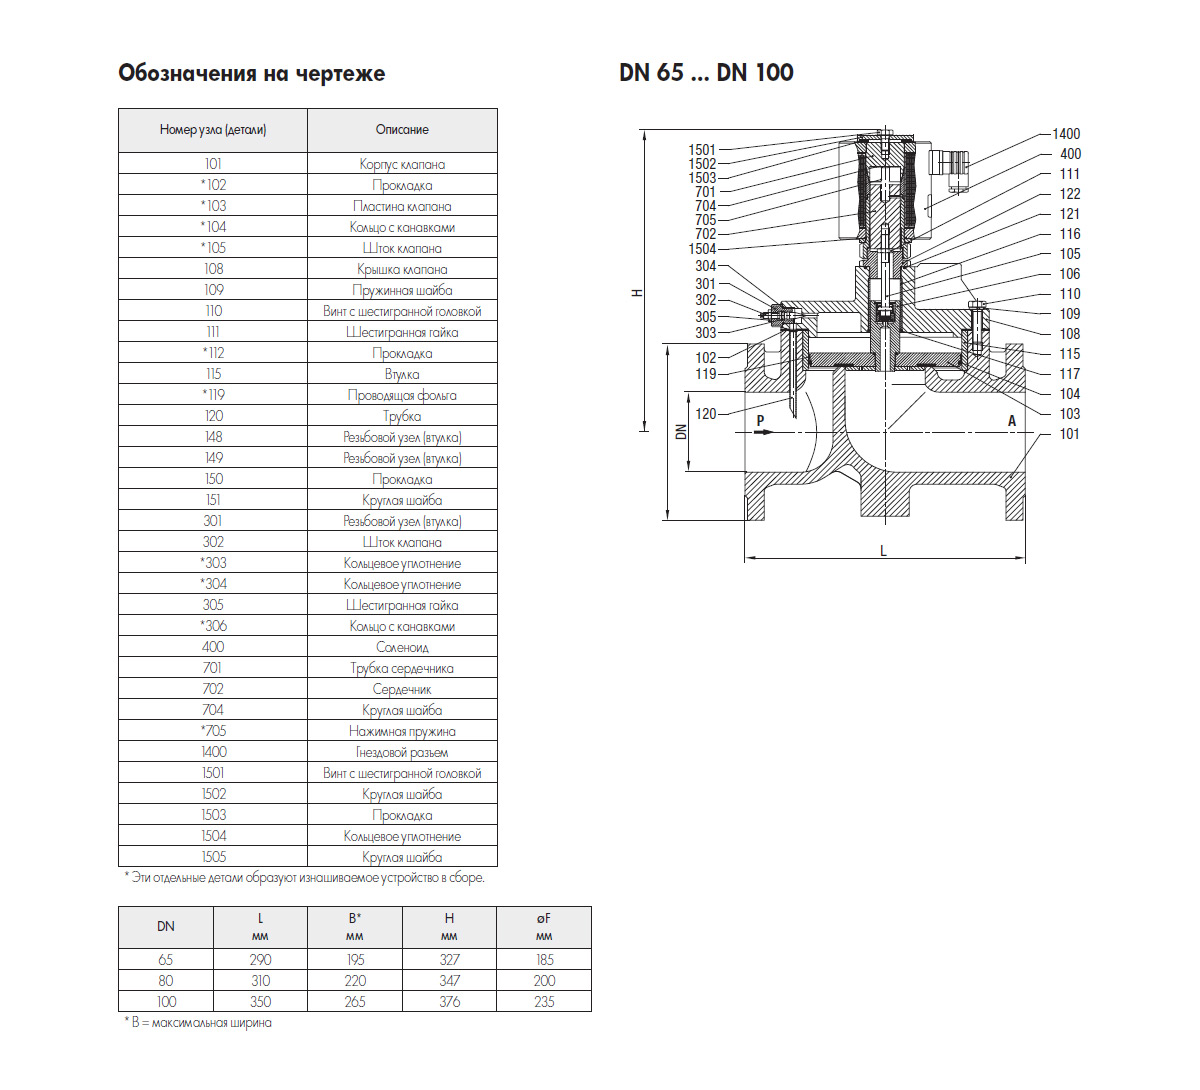 Электромагнитные клапаны cерии 85240/84240 для СУГ и агрессивных сред (DN15-DN100, PN25-40)